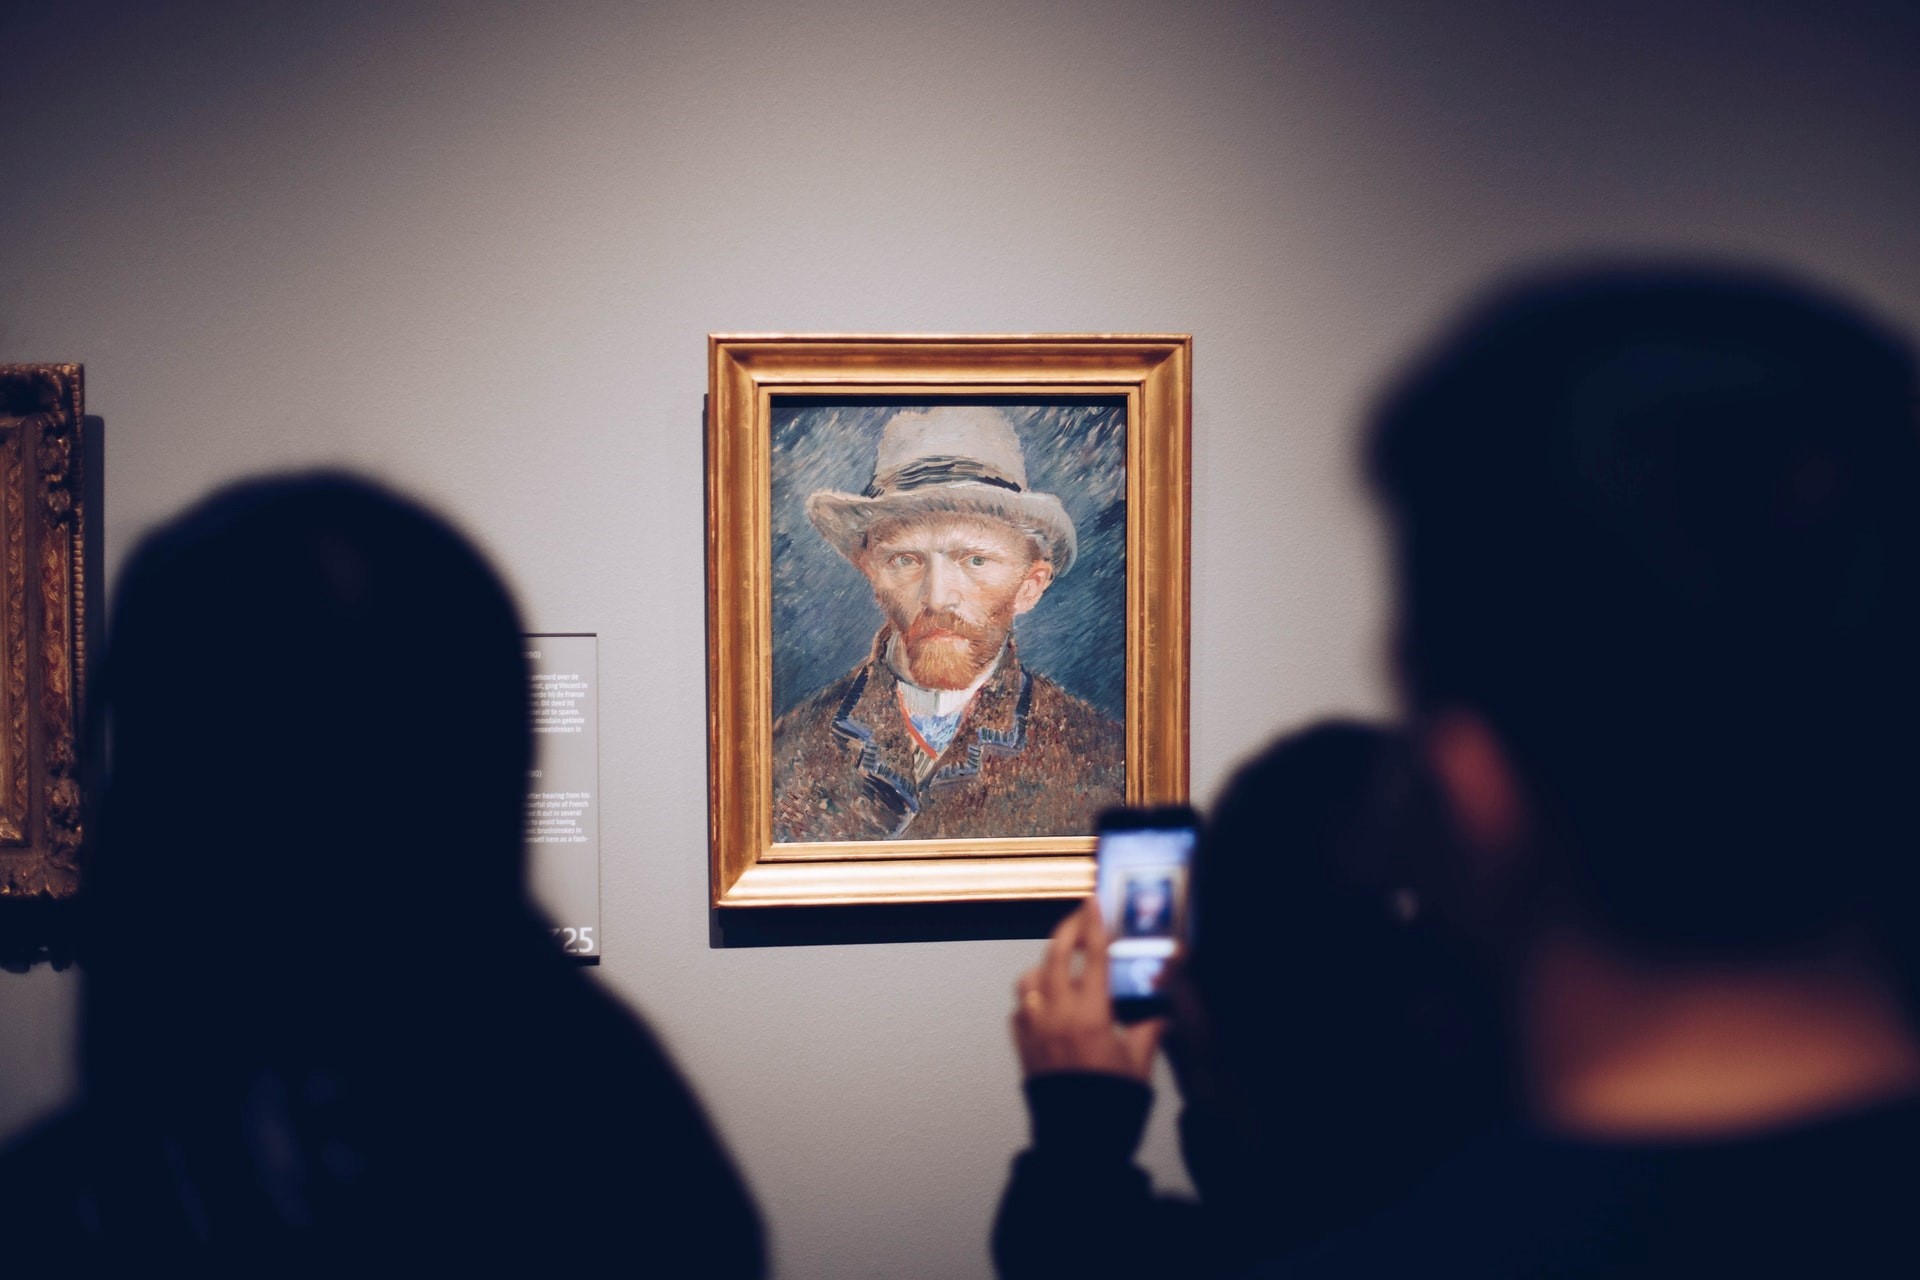 Le musée Van Gogh